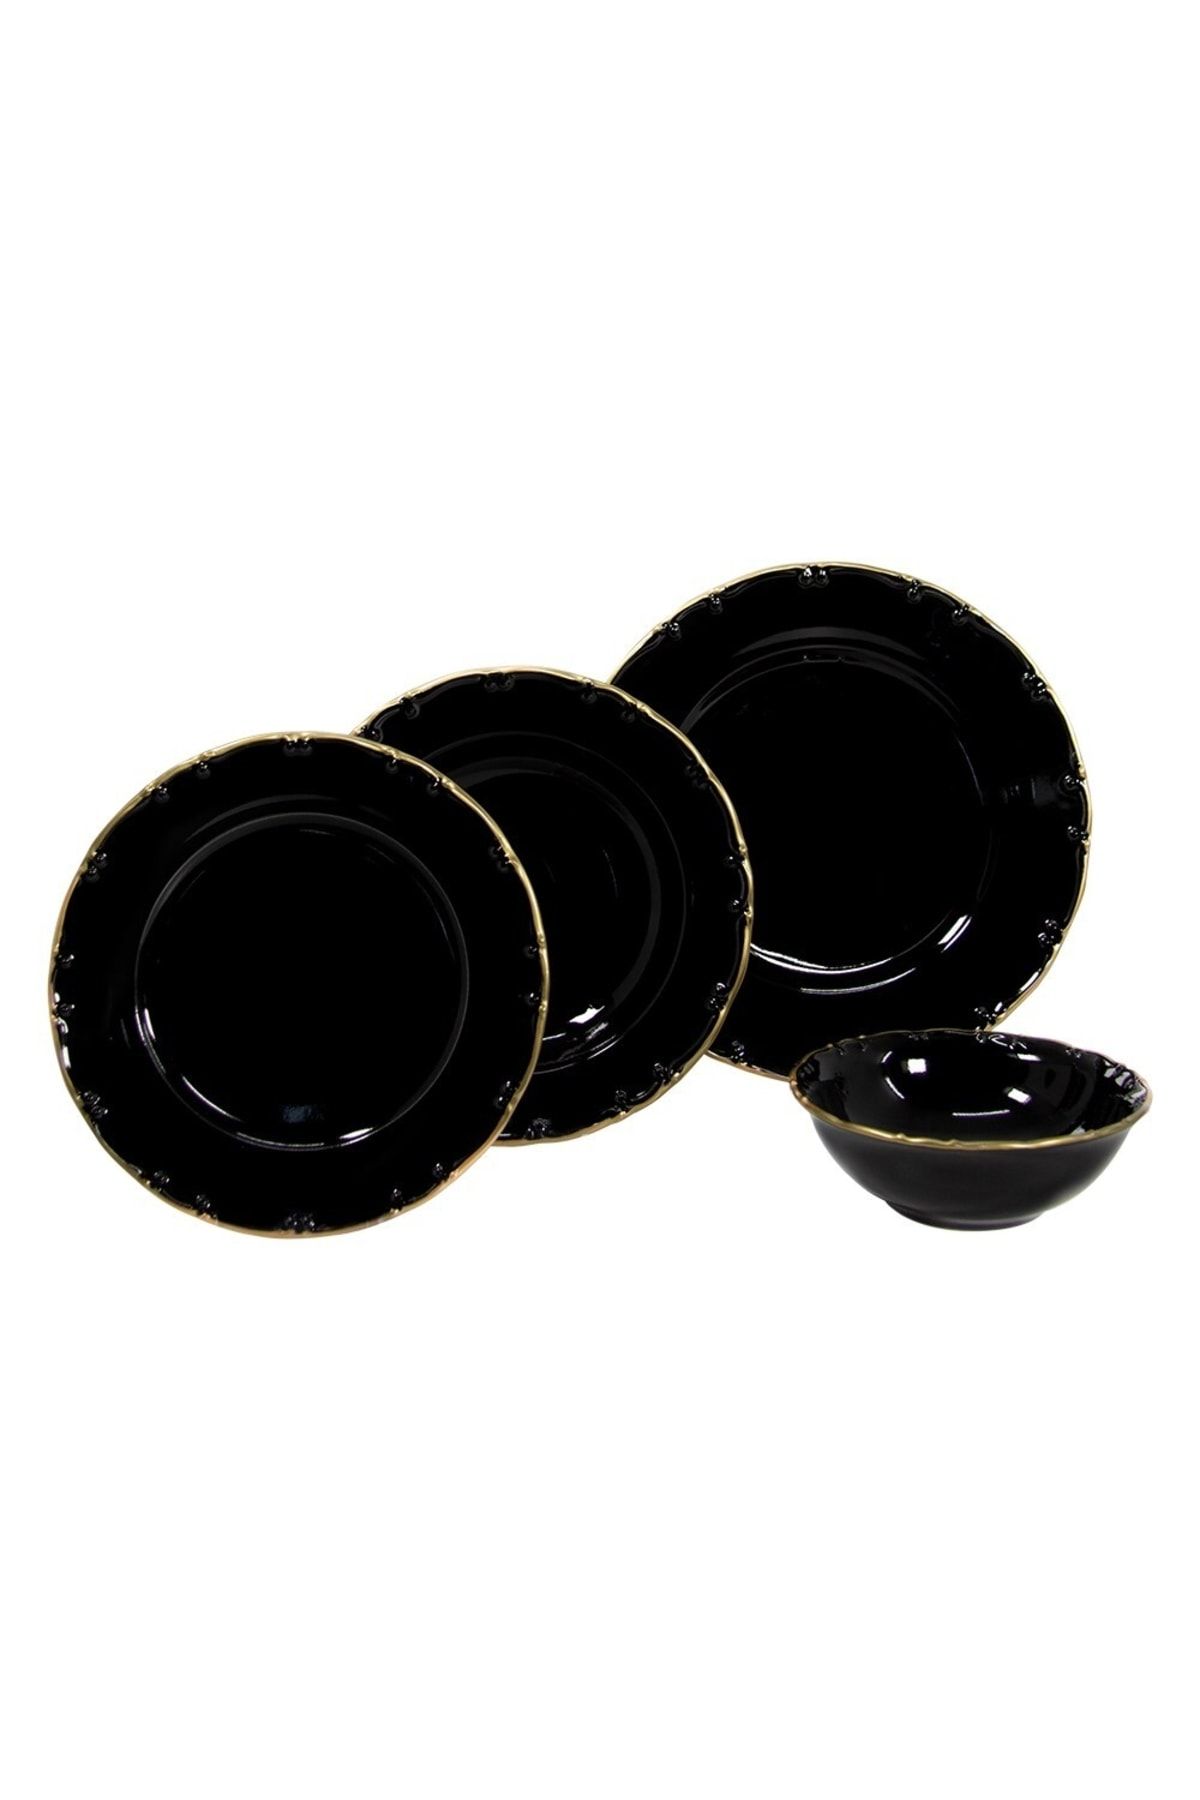 Mondecor Porselen 24 Parça Yemek Takımı - Hemera Black